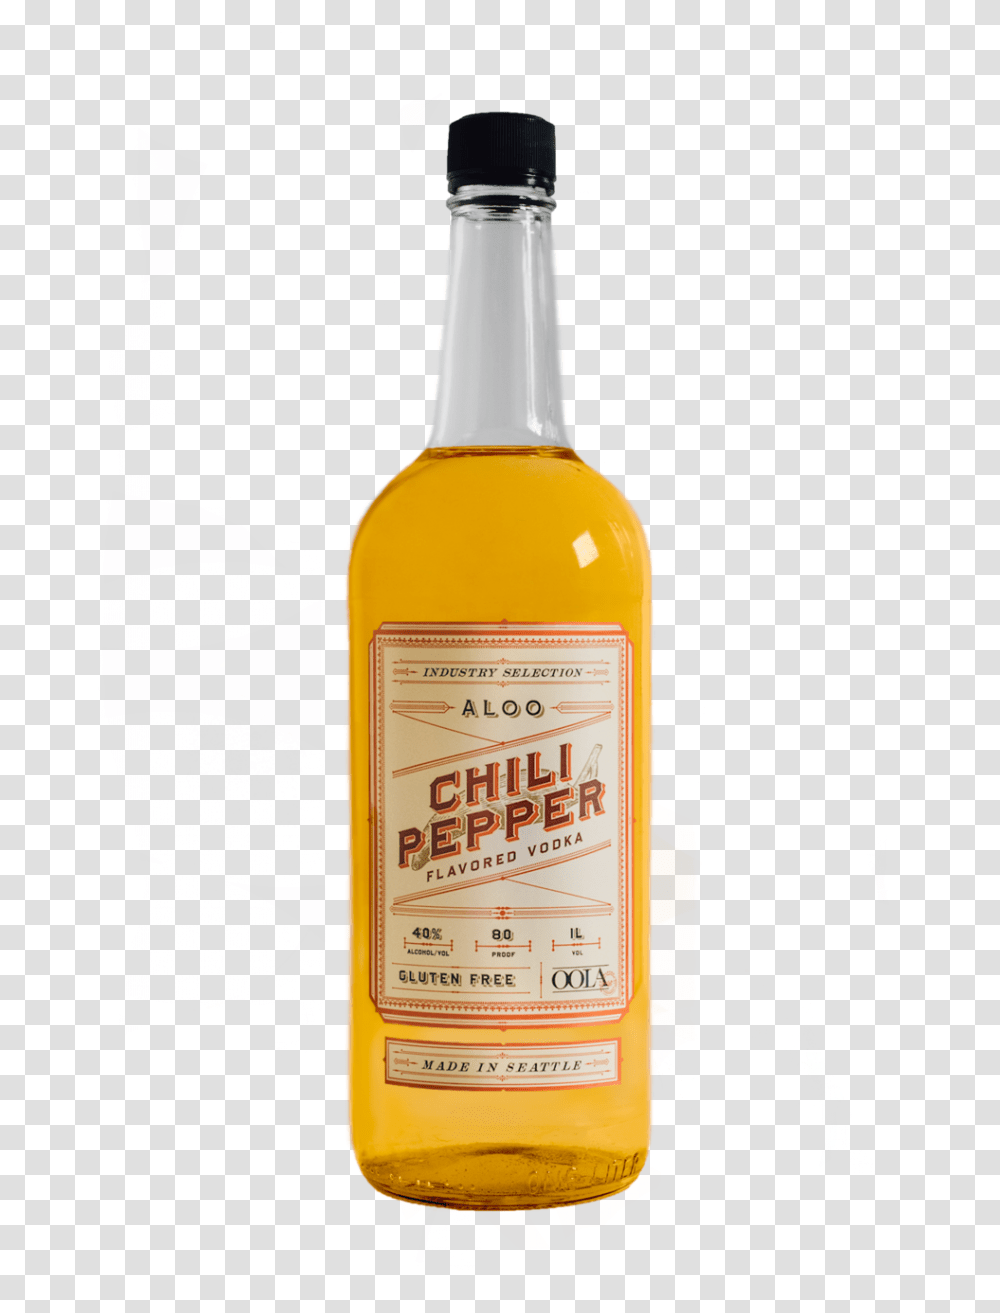 Aloo Chili Pepper Vodka Bottle Shot 2018 Grain Whisky, Liquor, Alcohol, Beverage, Drink Transparent Png